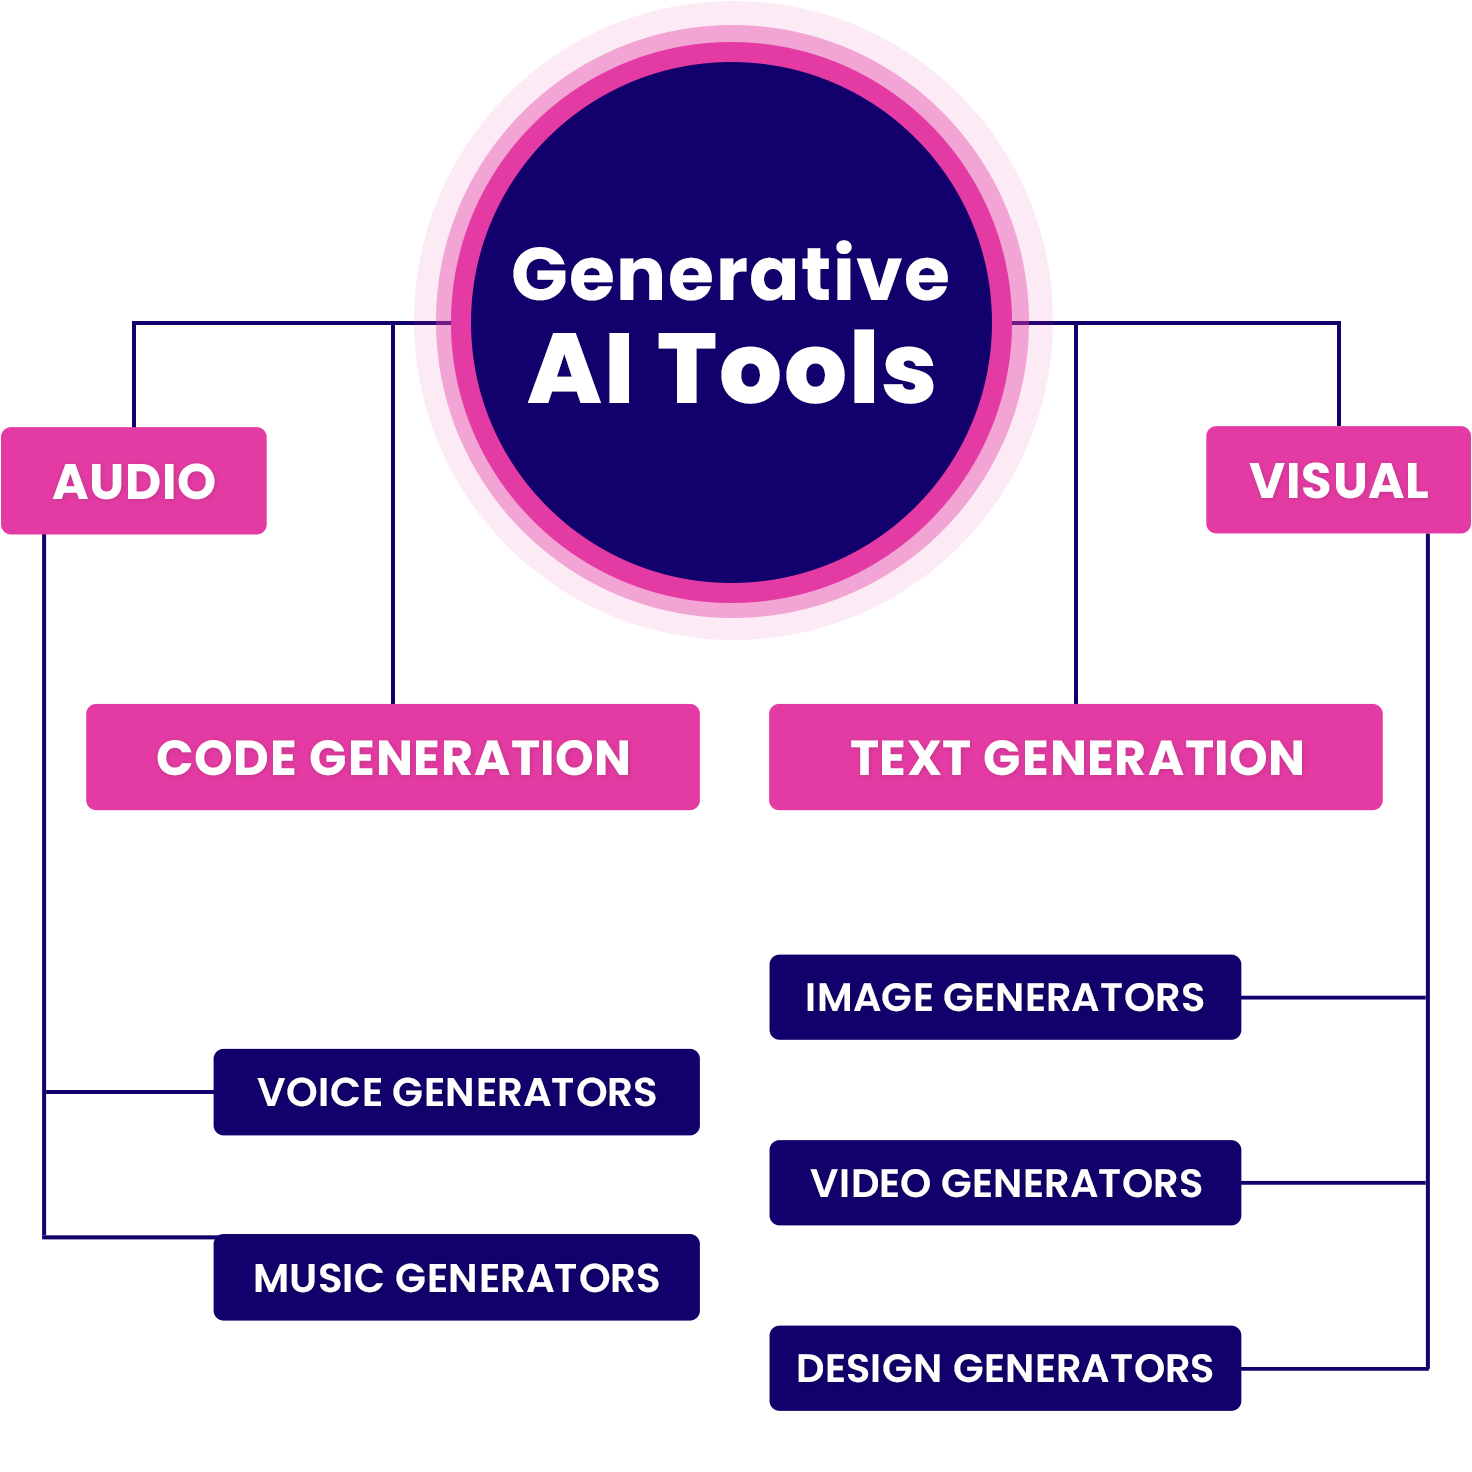 Generative AI Tools